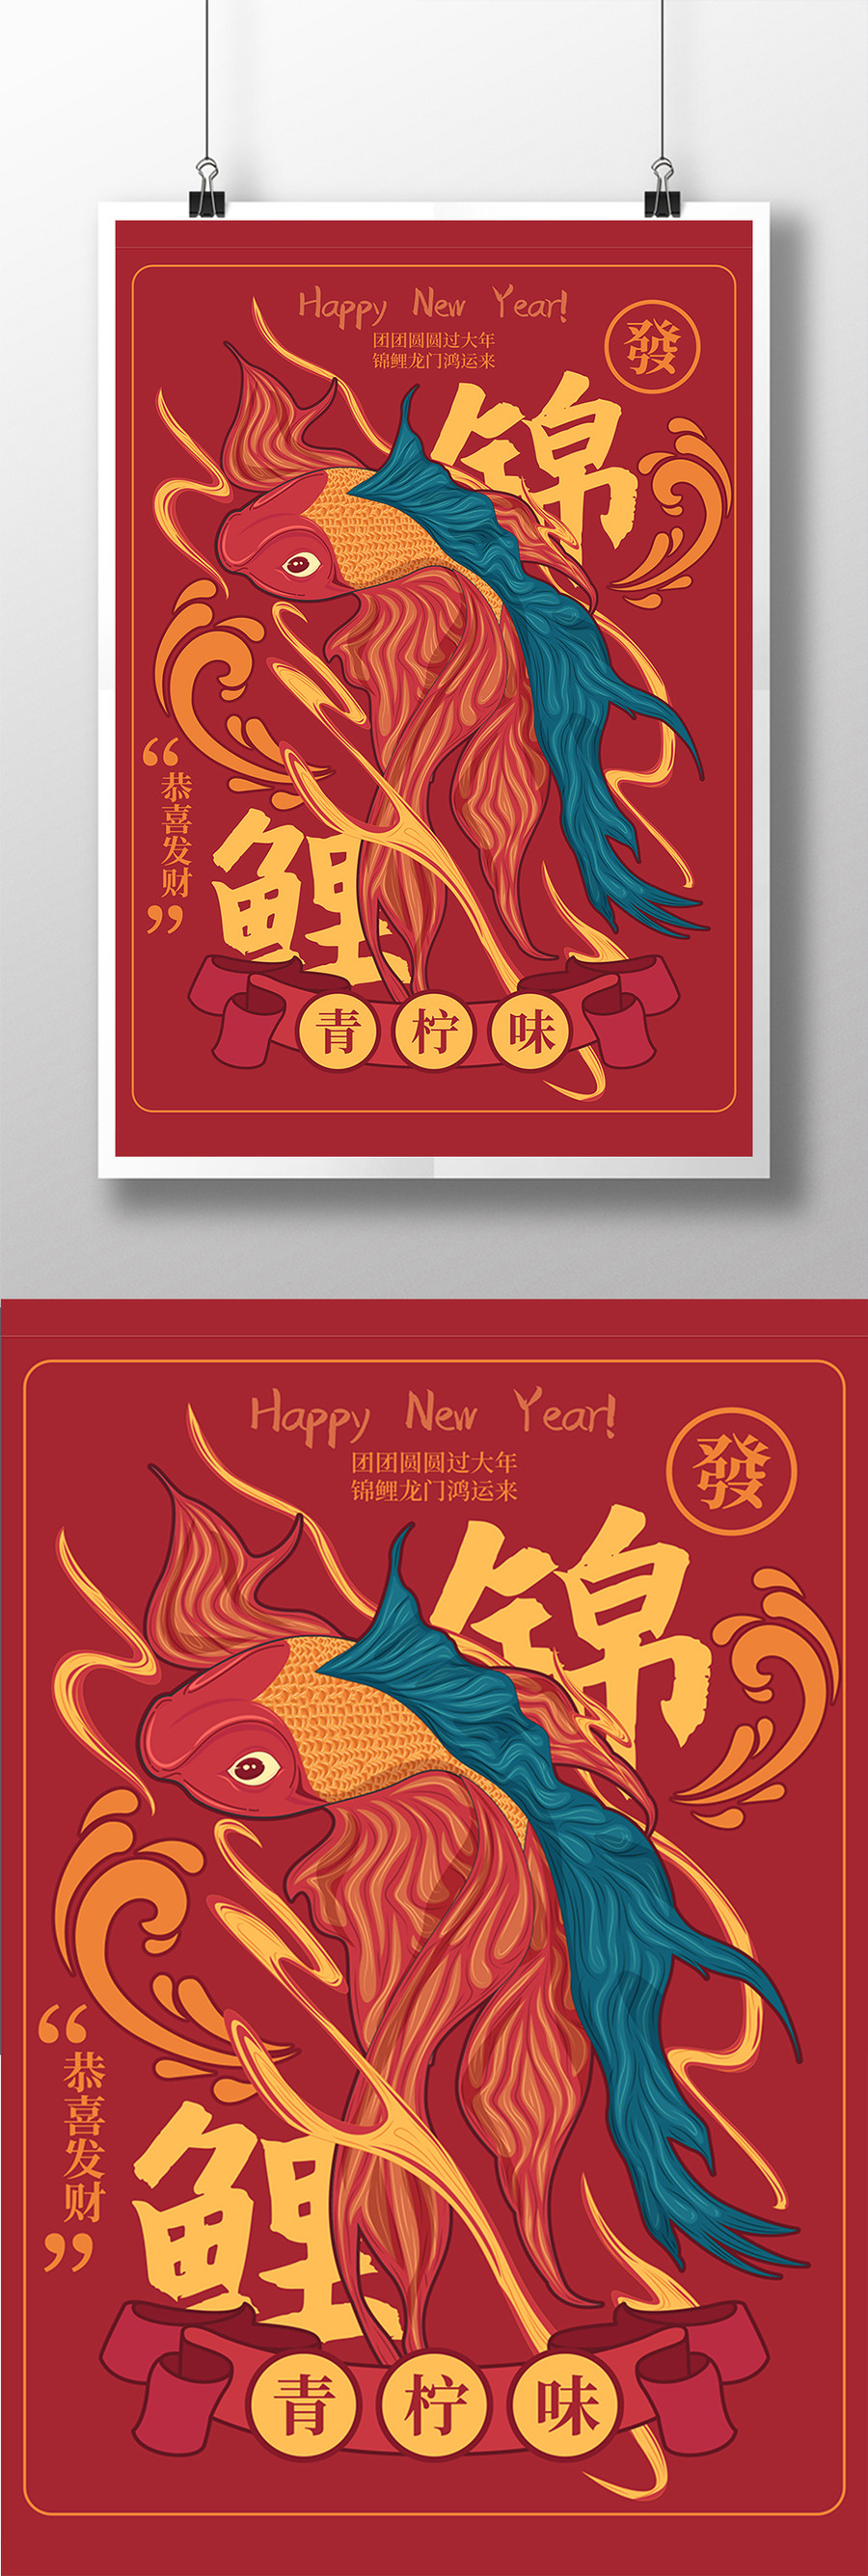 创意喜庆新年锦鲤宣传海报